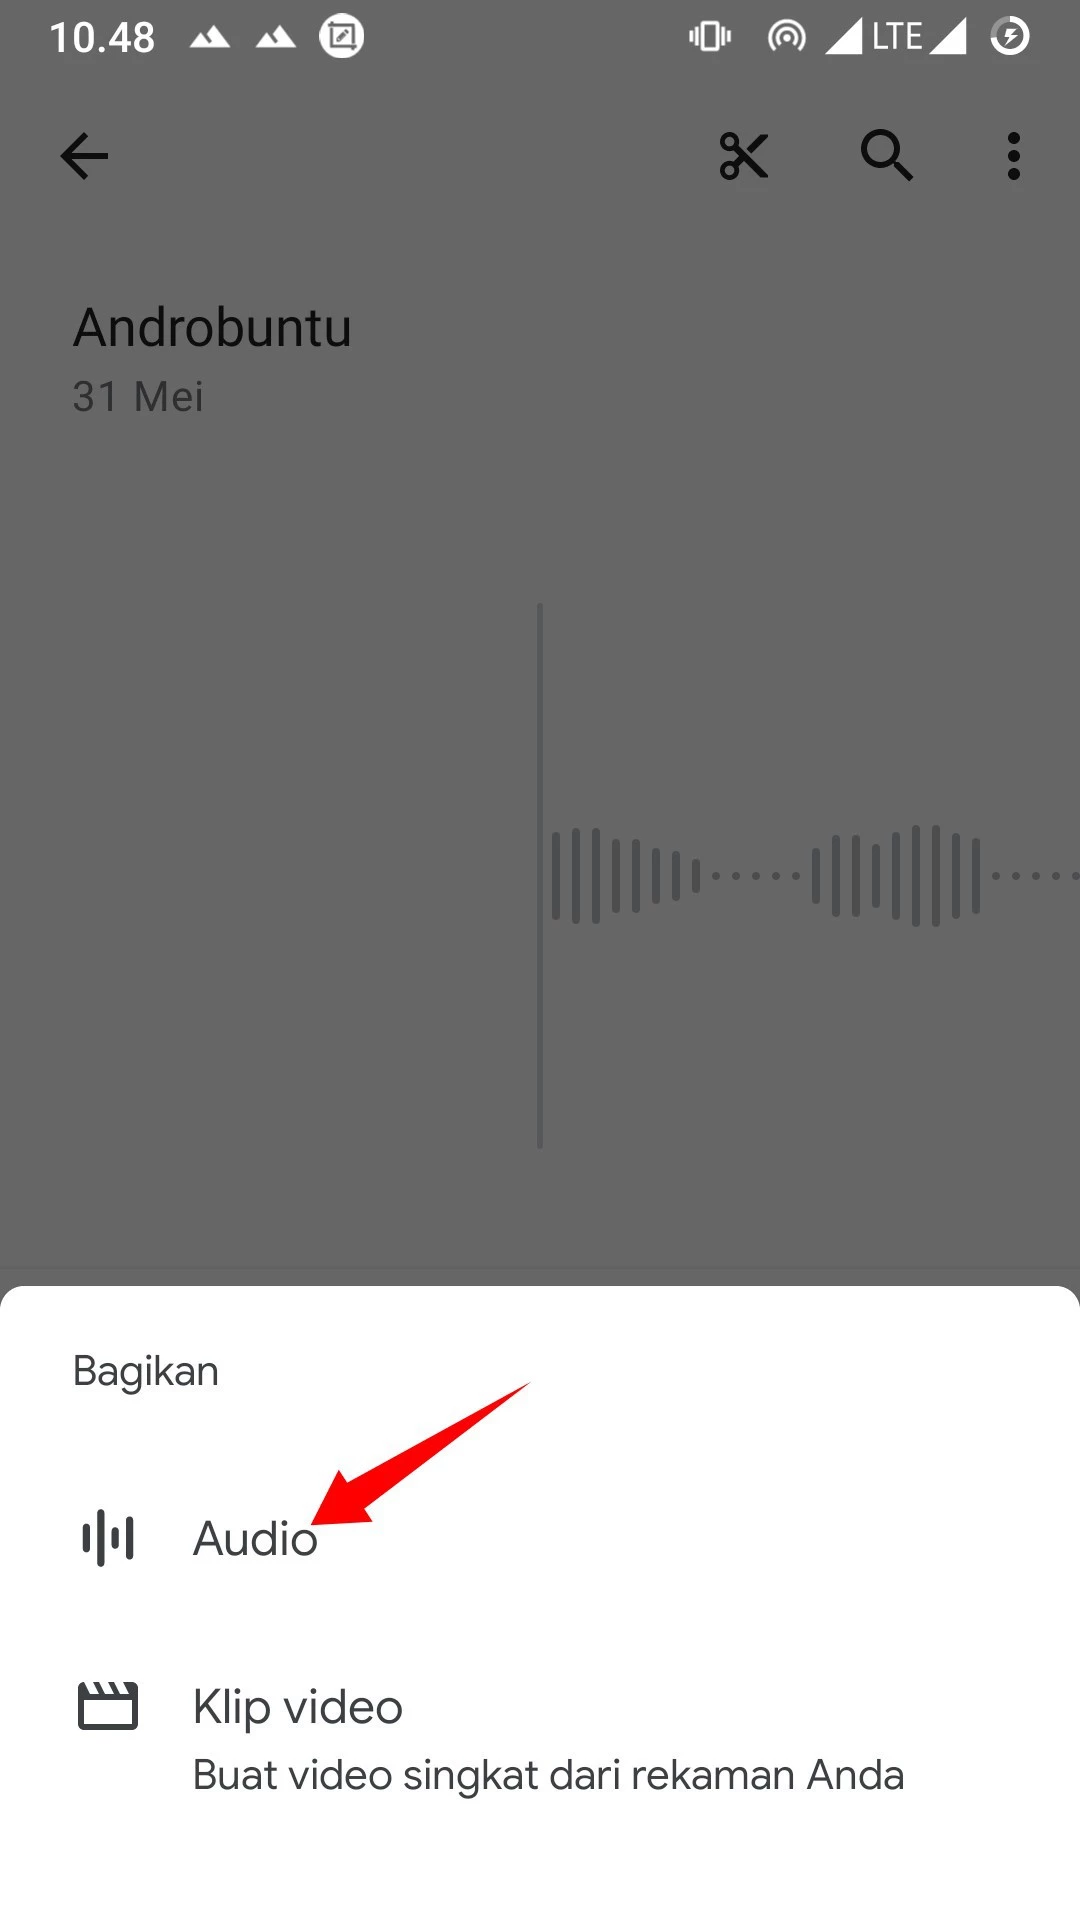 Cara Mengirim Rekaman Suara Melalui Email by Androbuntu 4